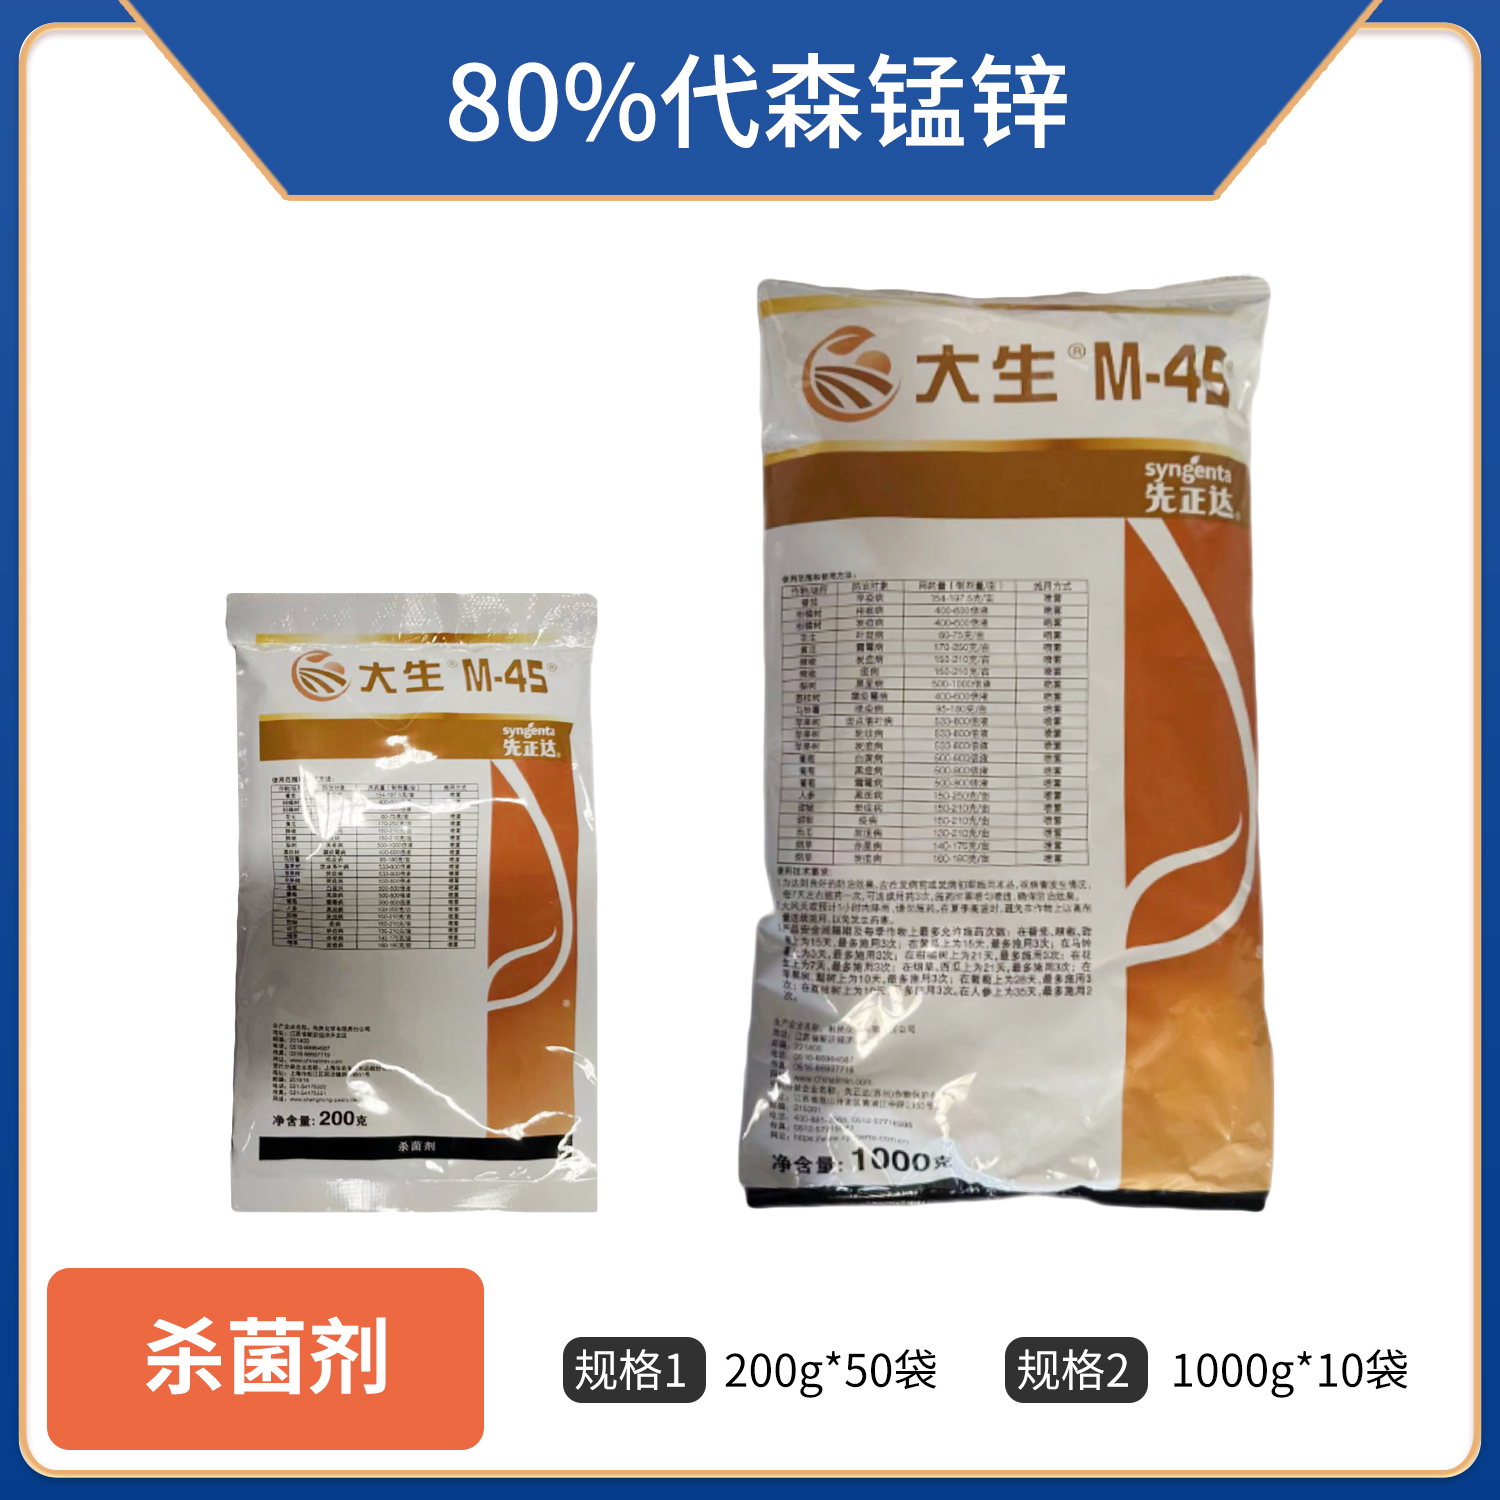 大生M-45-80%代森锰锌-可湿性粉剂